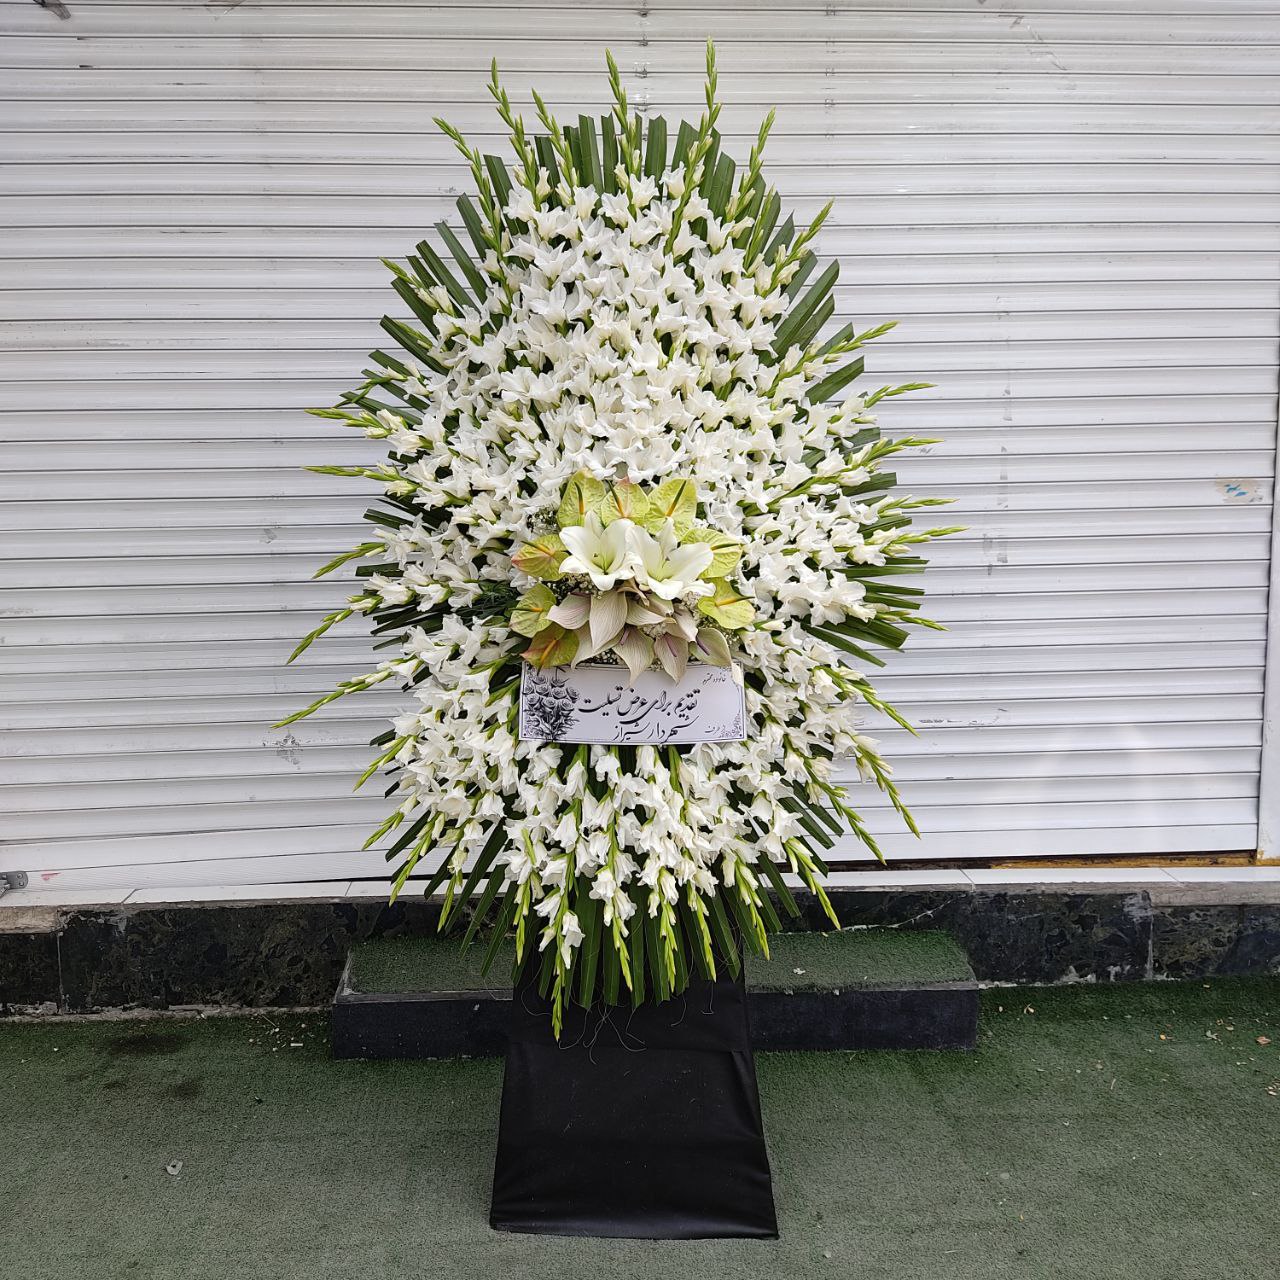 خرید و سفارش آنلاین تاج گل ترحیم و تسلیت طرح آرتین از گلفروشی اطلس گل در شیراز .